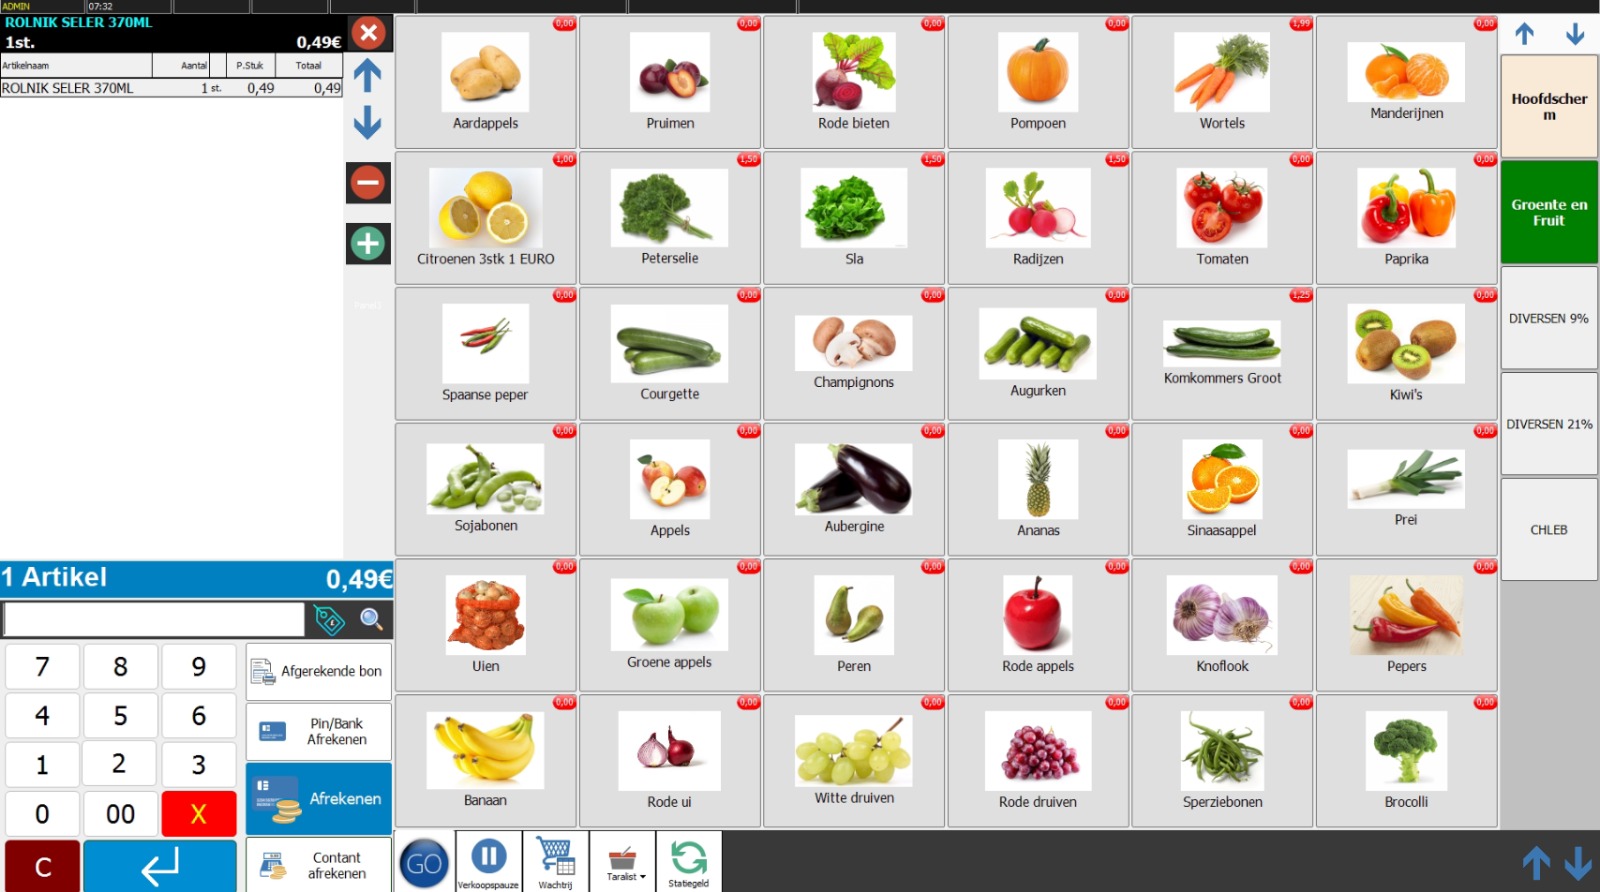 Groente en Fruit op het scherm van de kassa